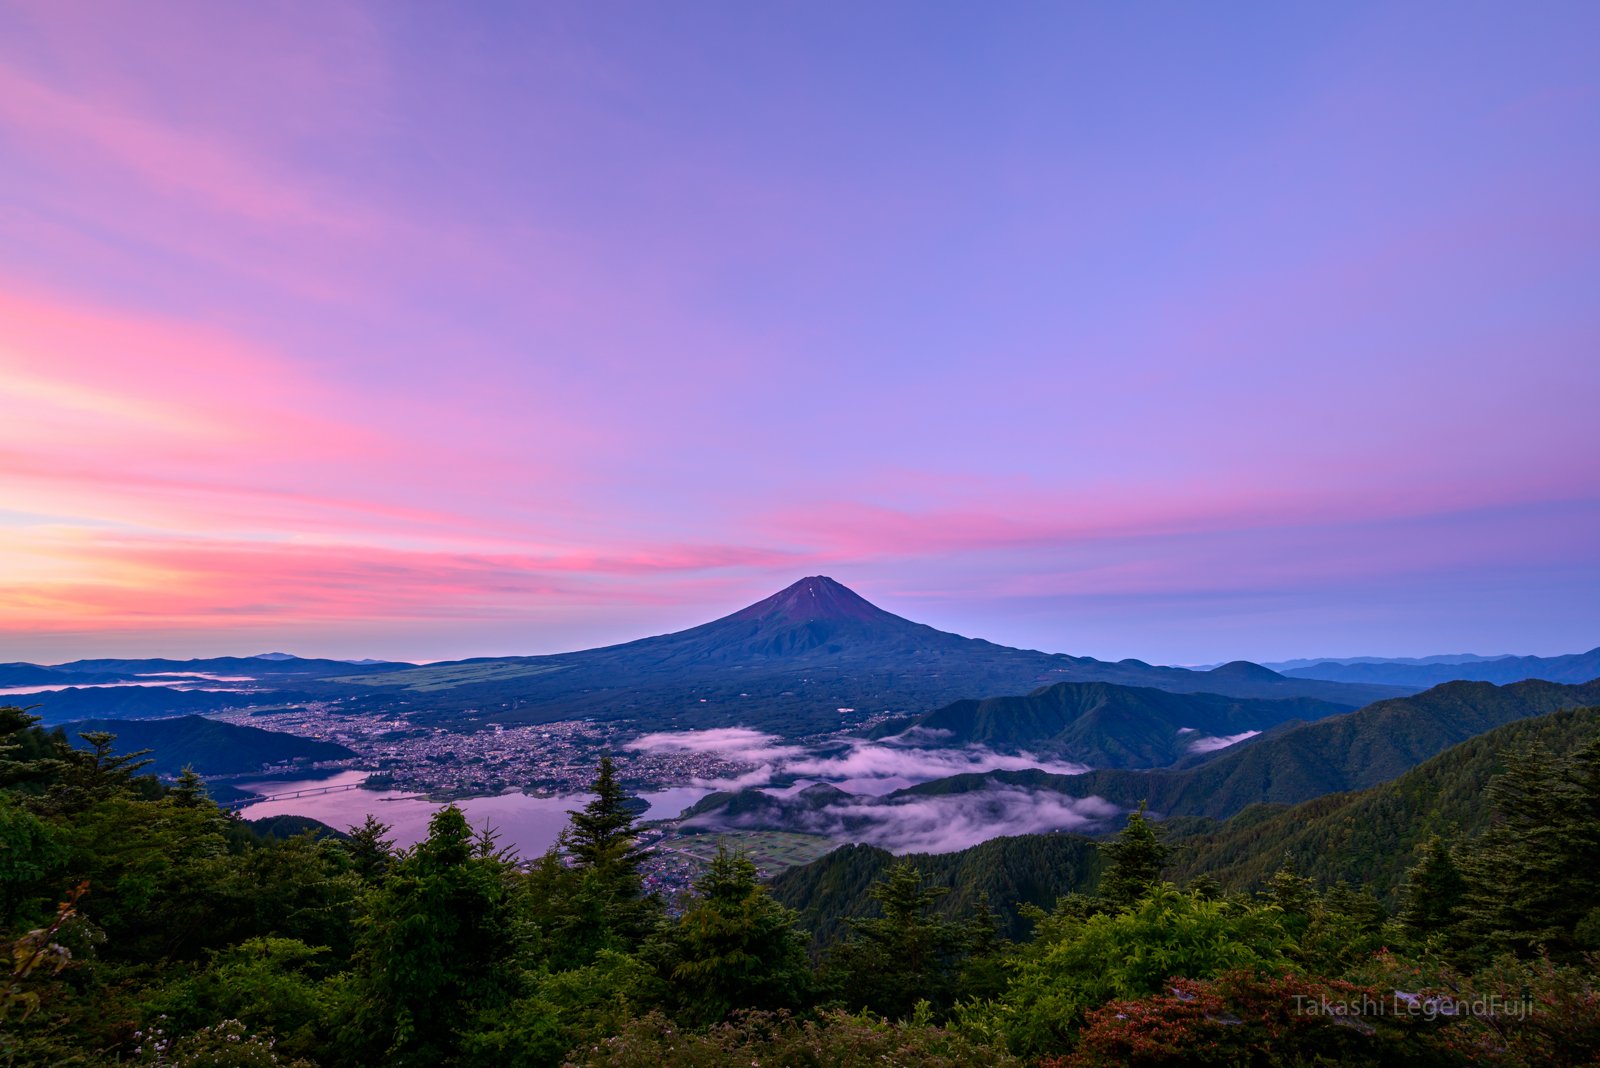 Fuji,mountain,sky,blue,pink,tree,lake,Japan,morning glow,sunrise,sunshine,morning,, Takashi